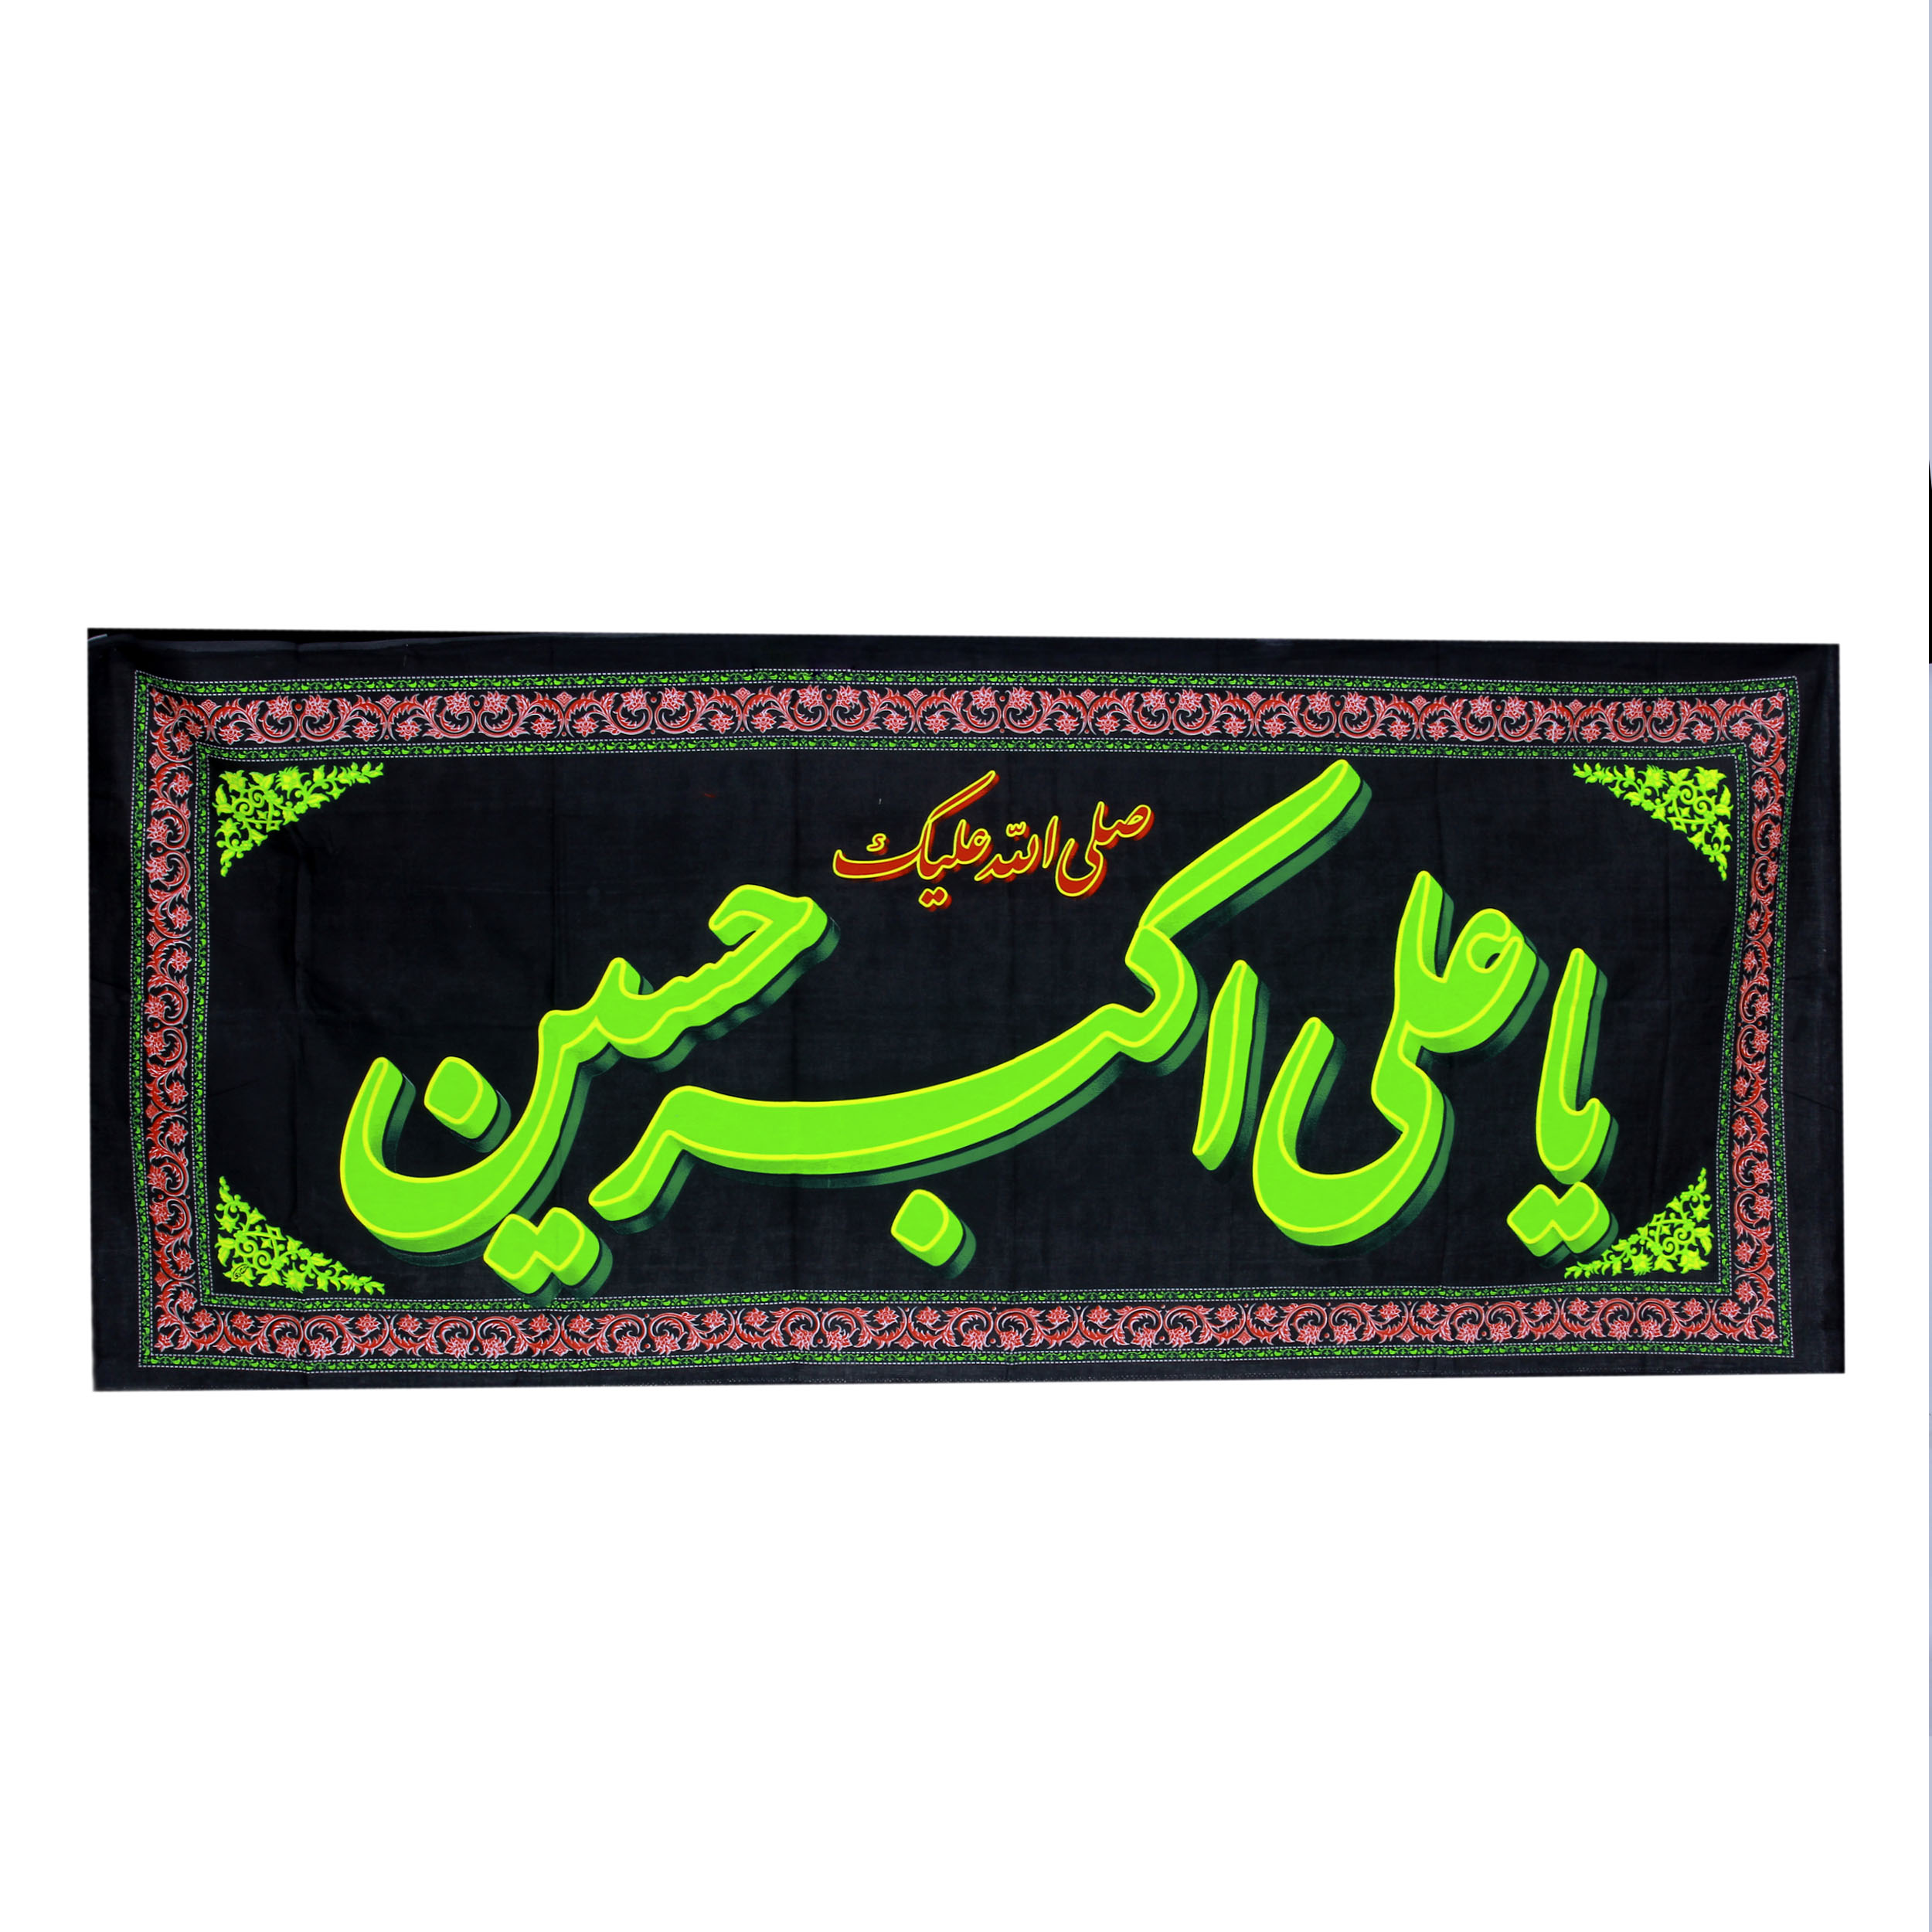 پرچم  بازرگانی میلادی مدل دیواری طرح مذهبی یا علی اکبر الحسین علیه السلام کدPAR-101